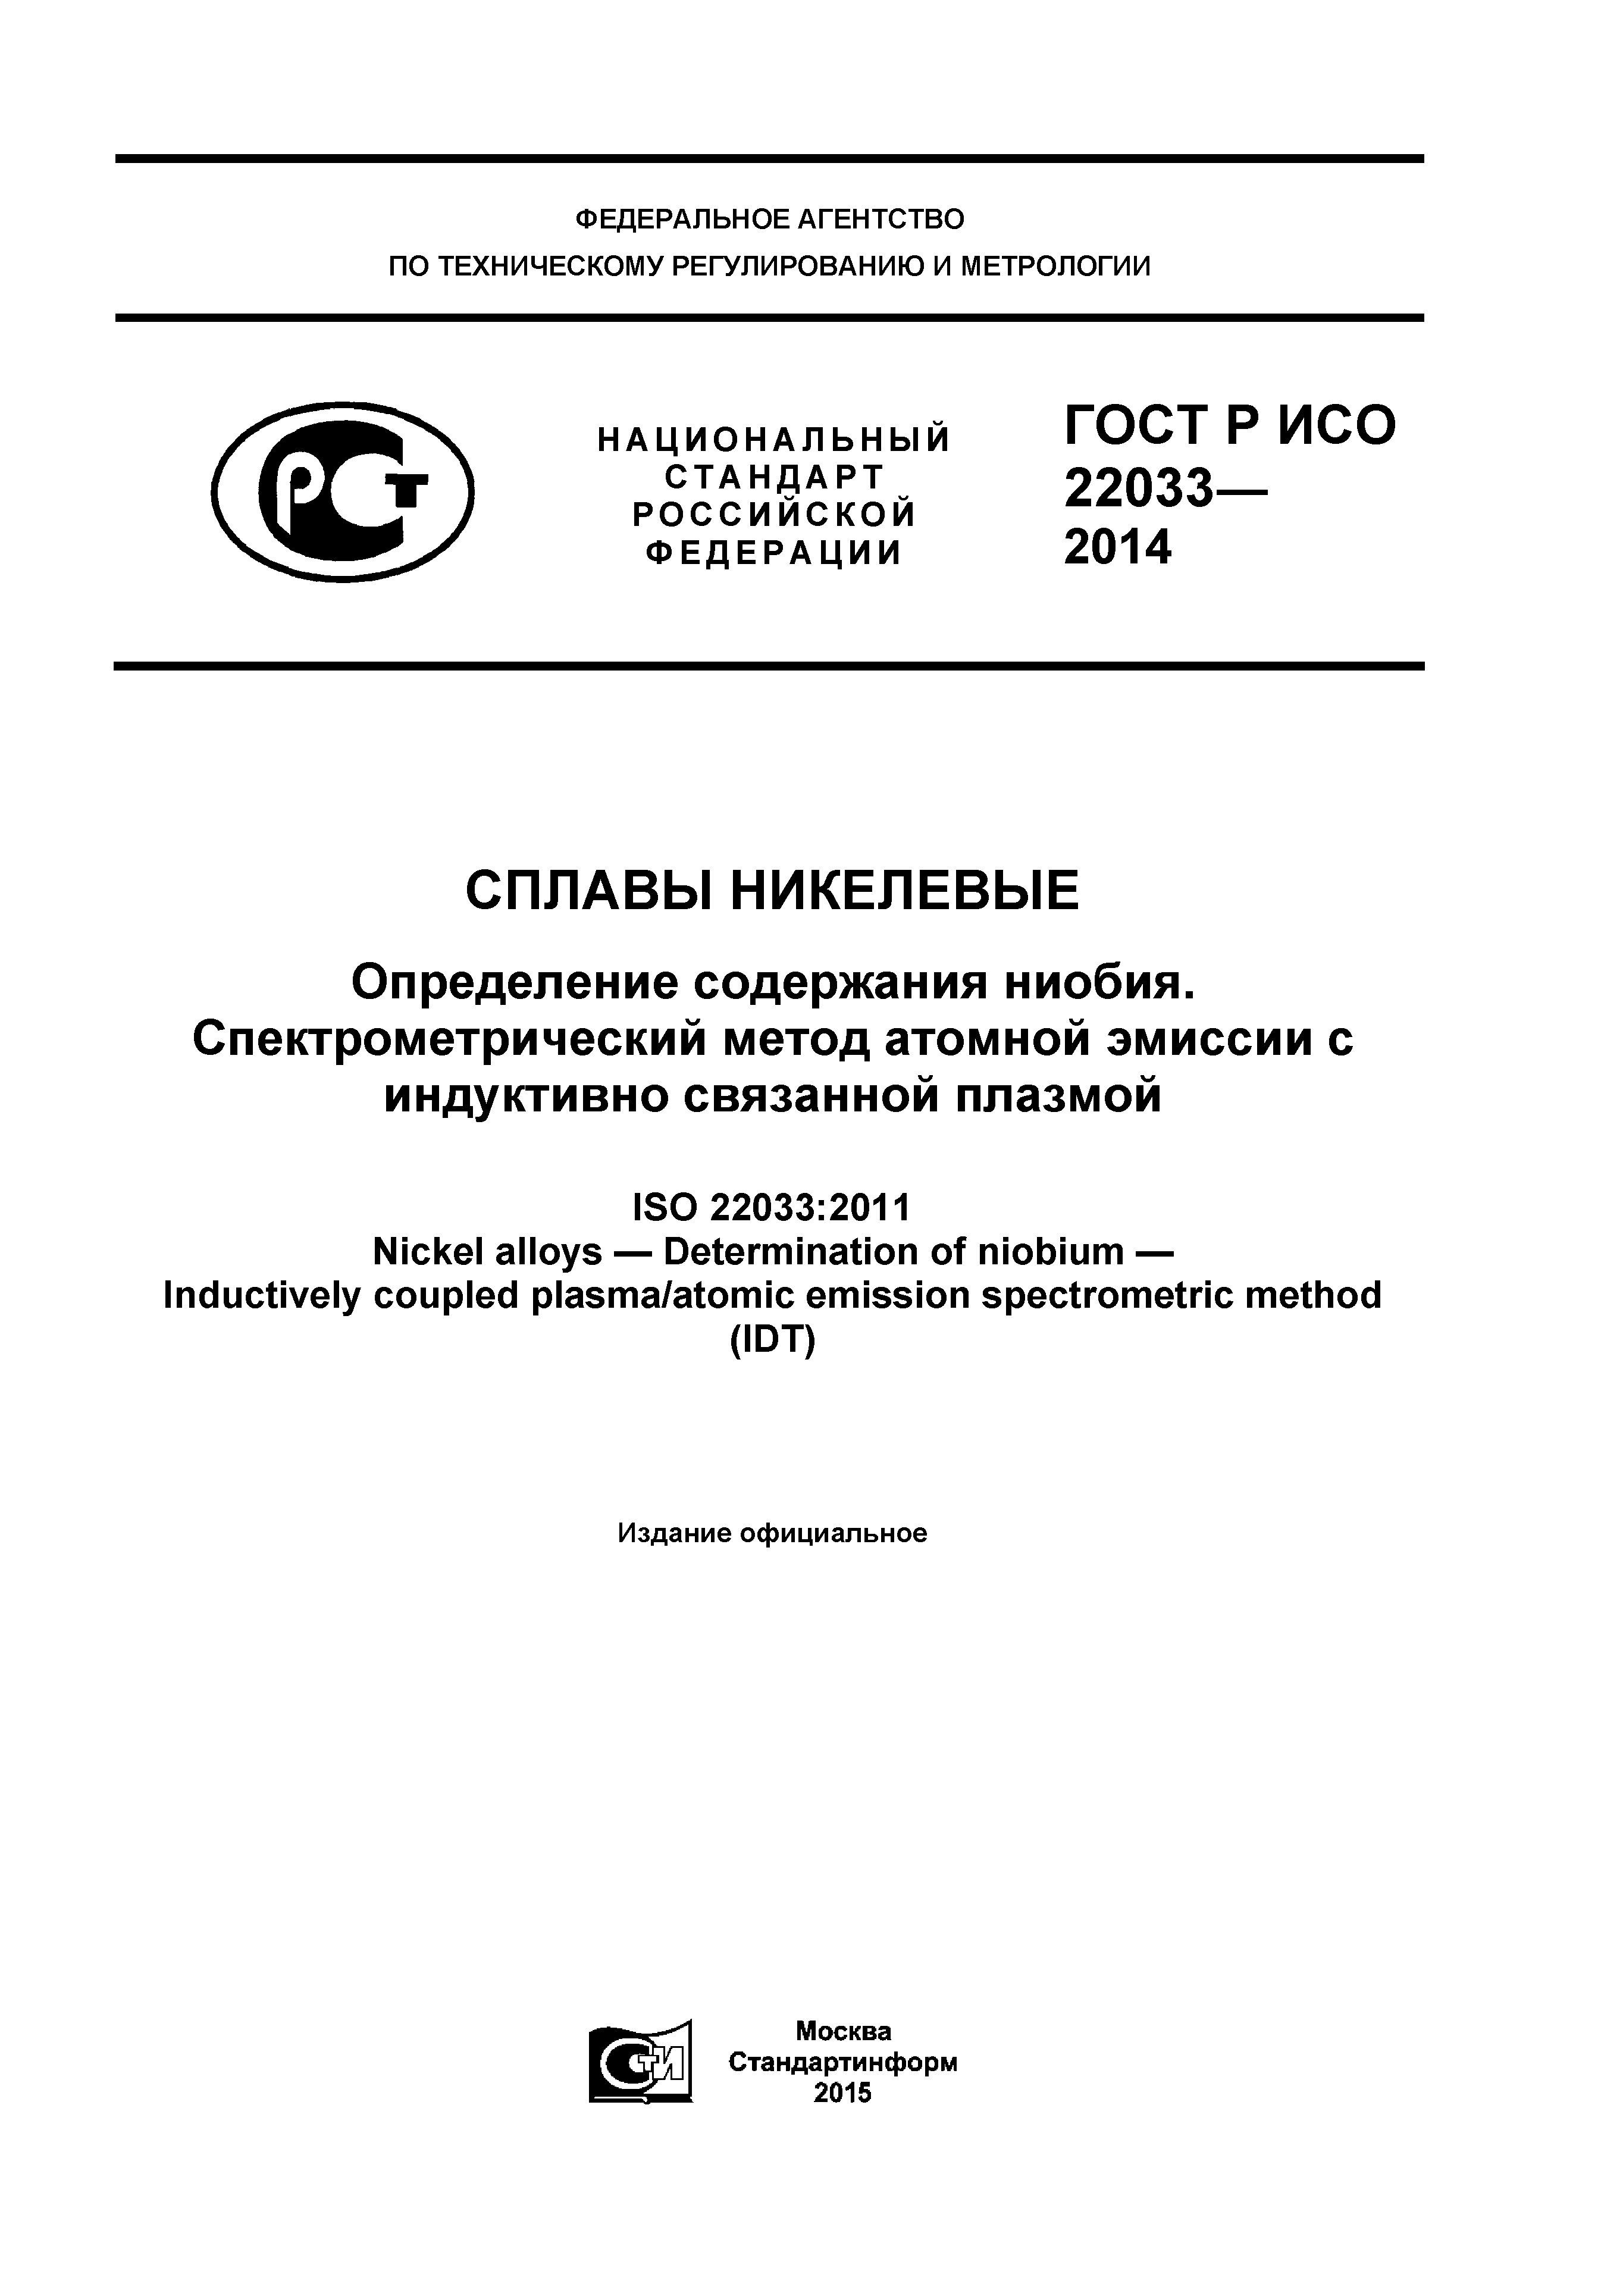 ГОСТ Р ИСО 22033-2014